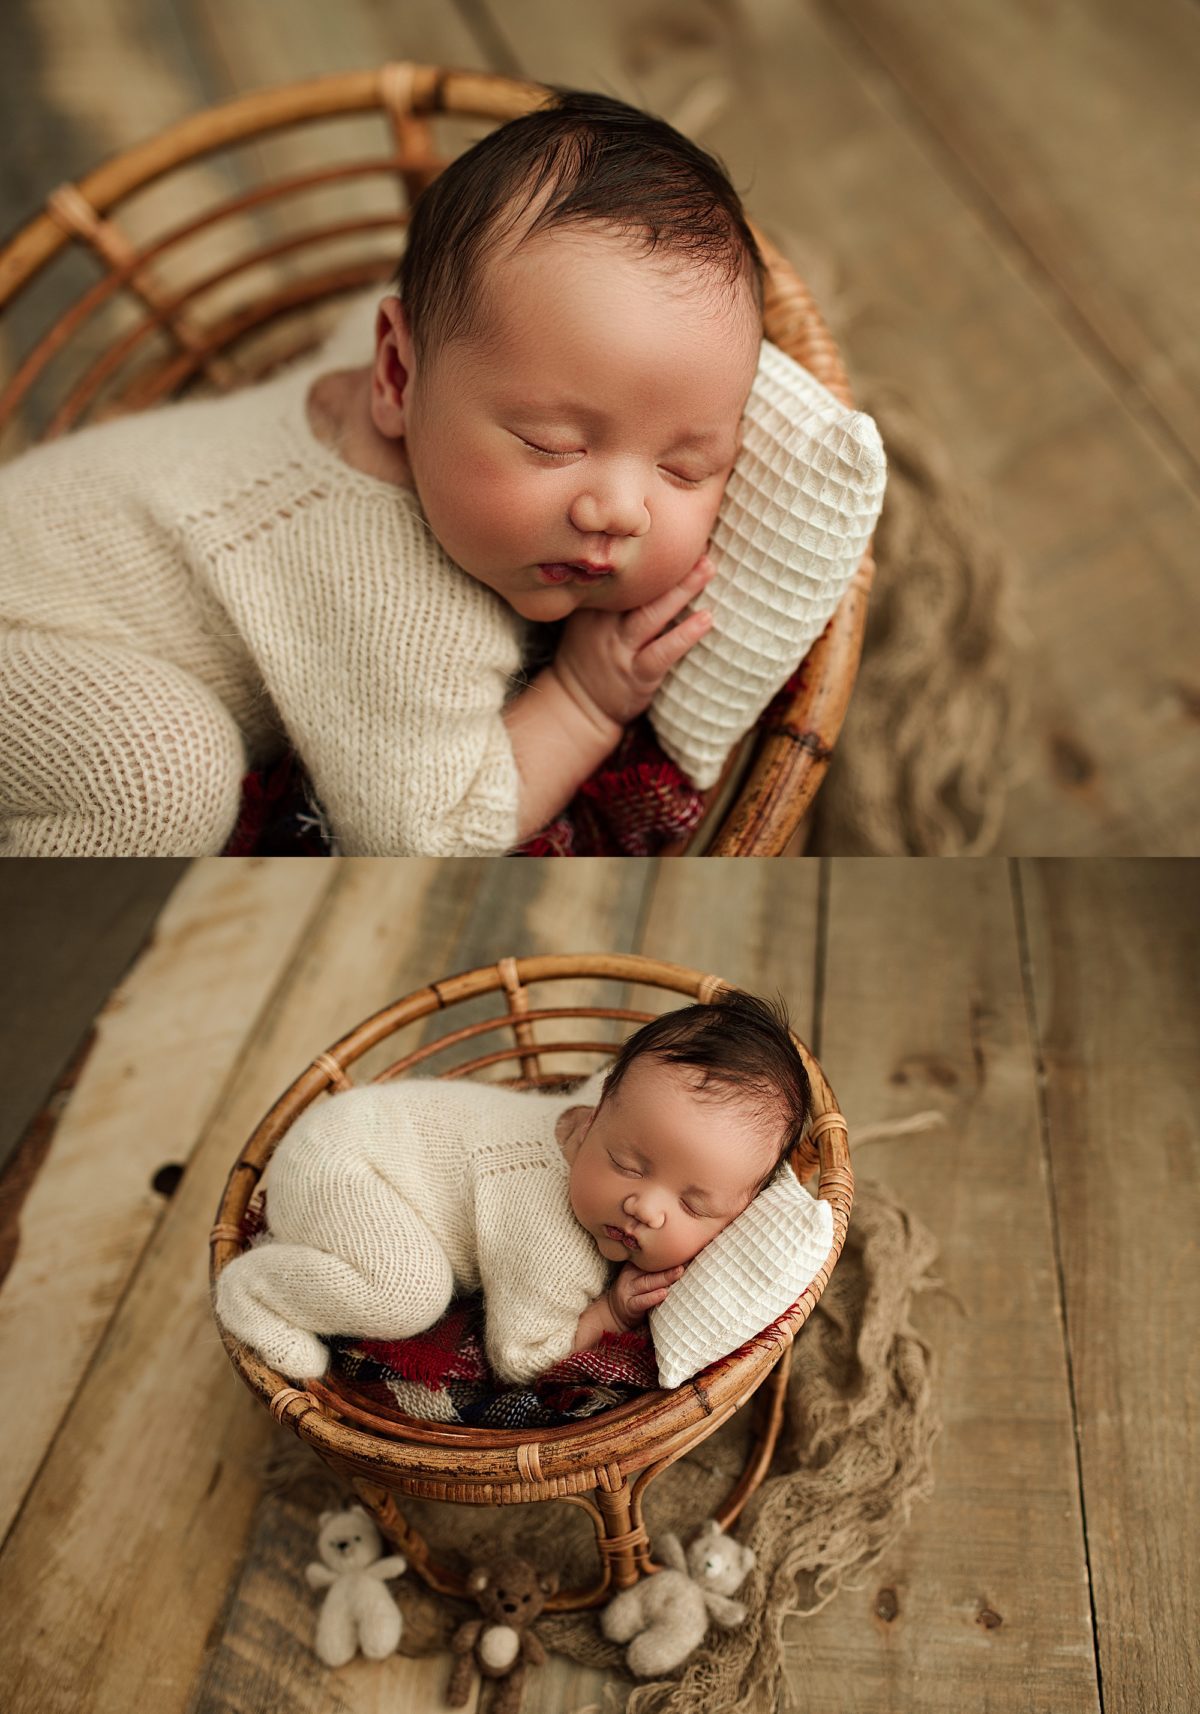 edmonton newborn photographers, edmonton newborn photographer, newborn photographer, newborn photography edmonton